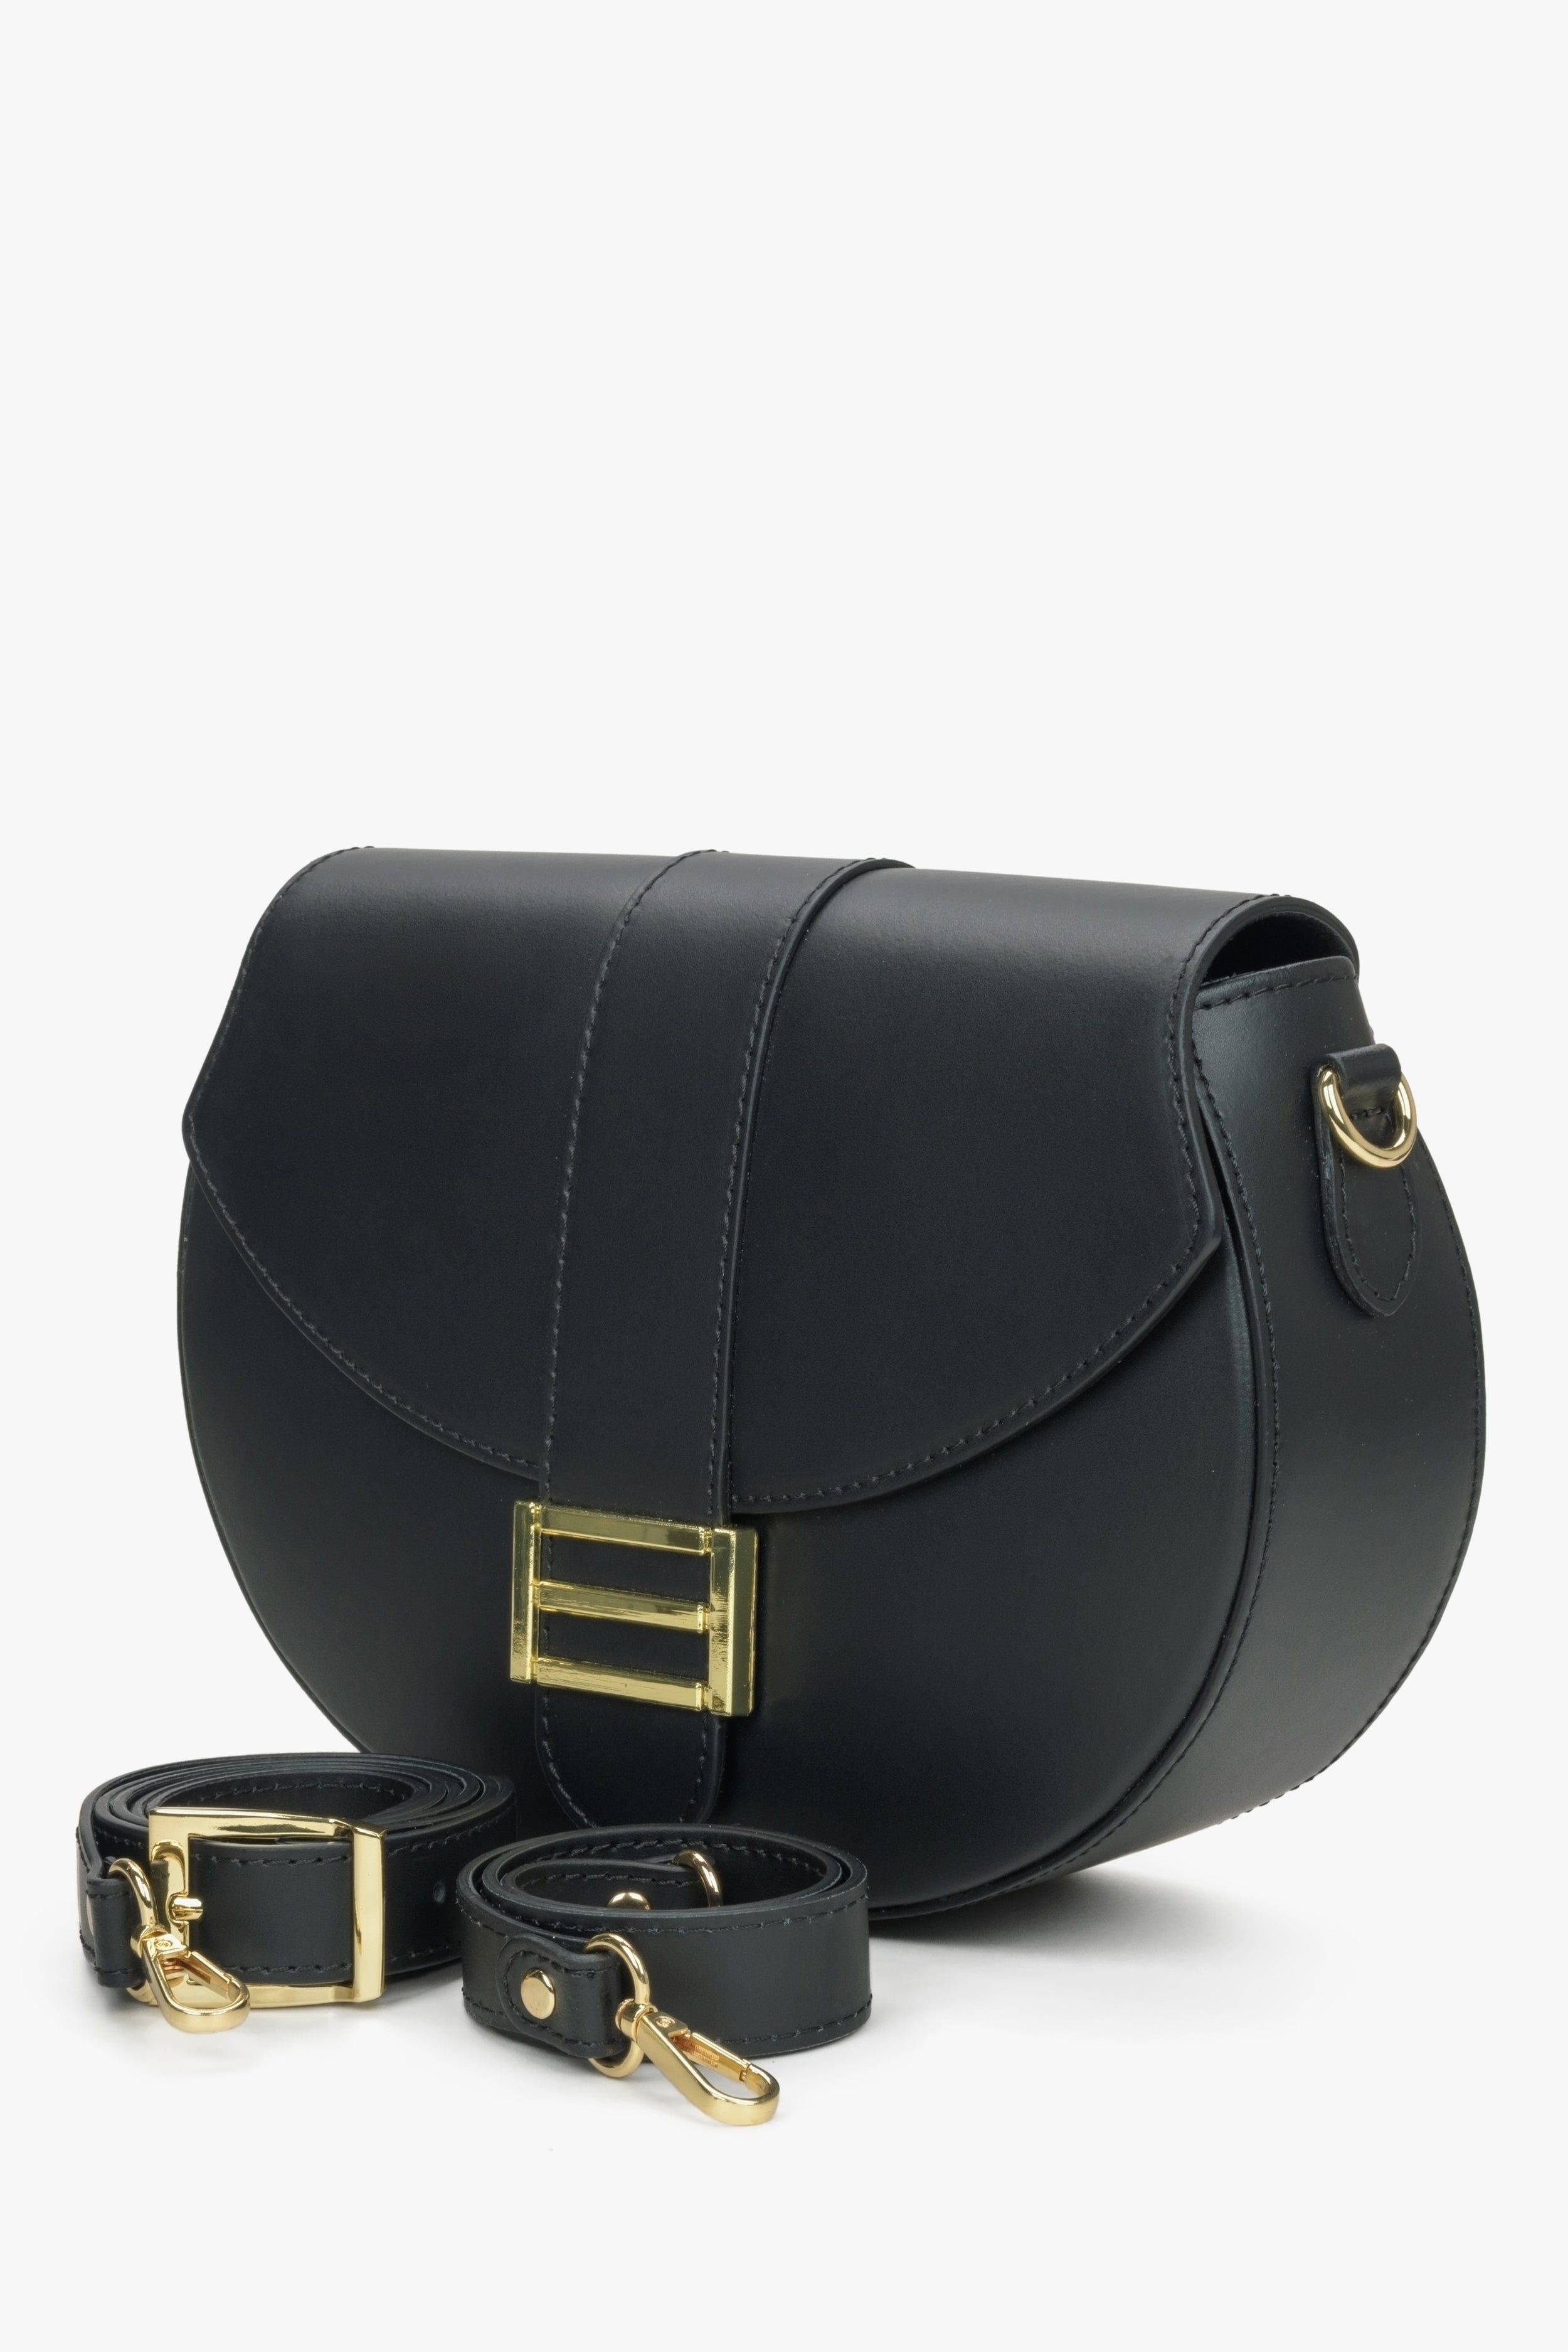 Estro: Czarna torebka damska w kształcie podkowy z włoskiej skóry naturalnej Premium